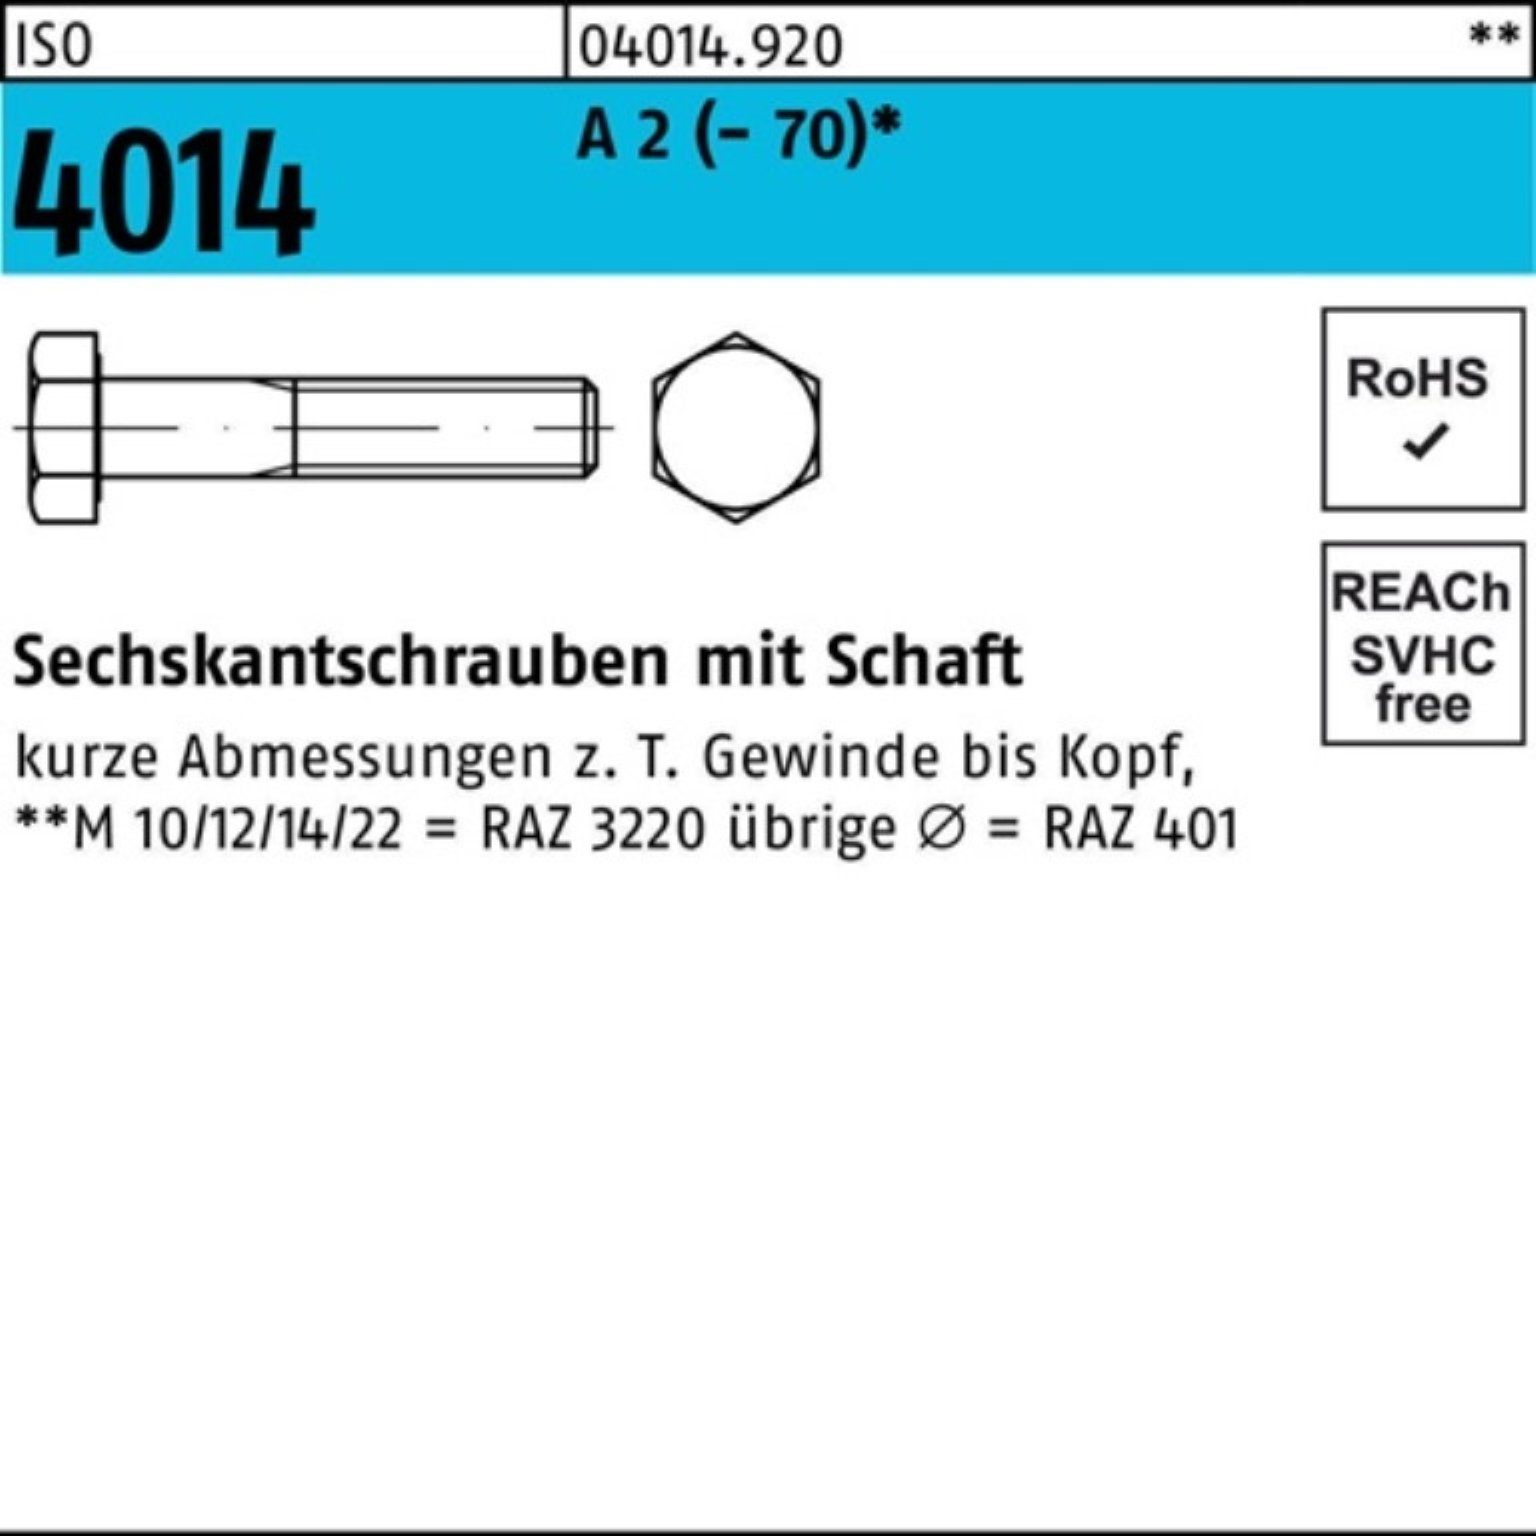 Bufab Sechskantschraube 100er Pack A 2 M20x 4014 1 Schaft Sechskantschraube Stü (70) 75 ISO